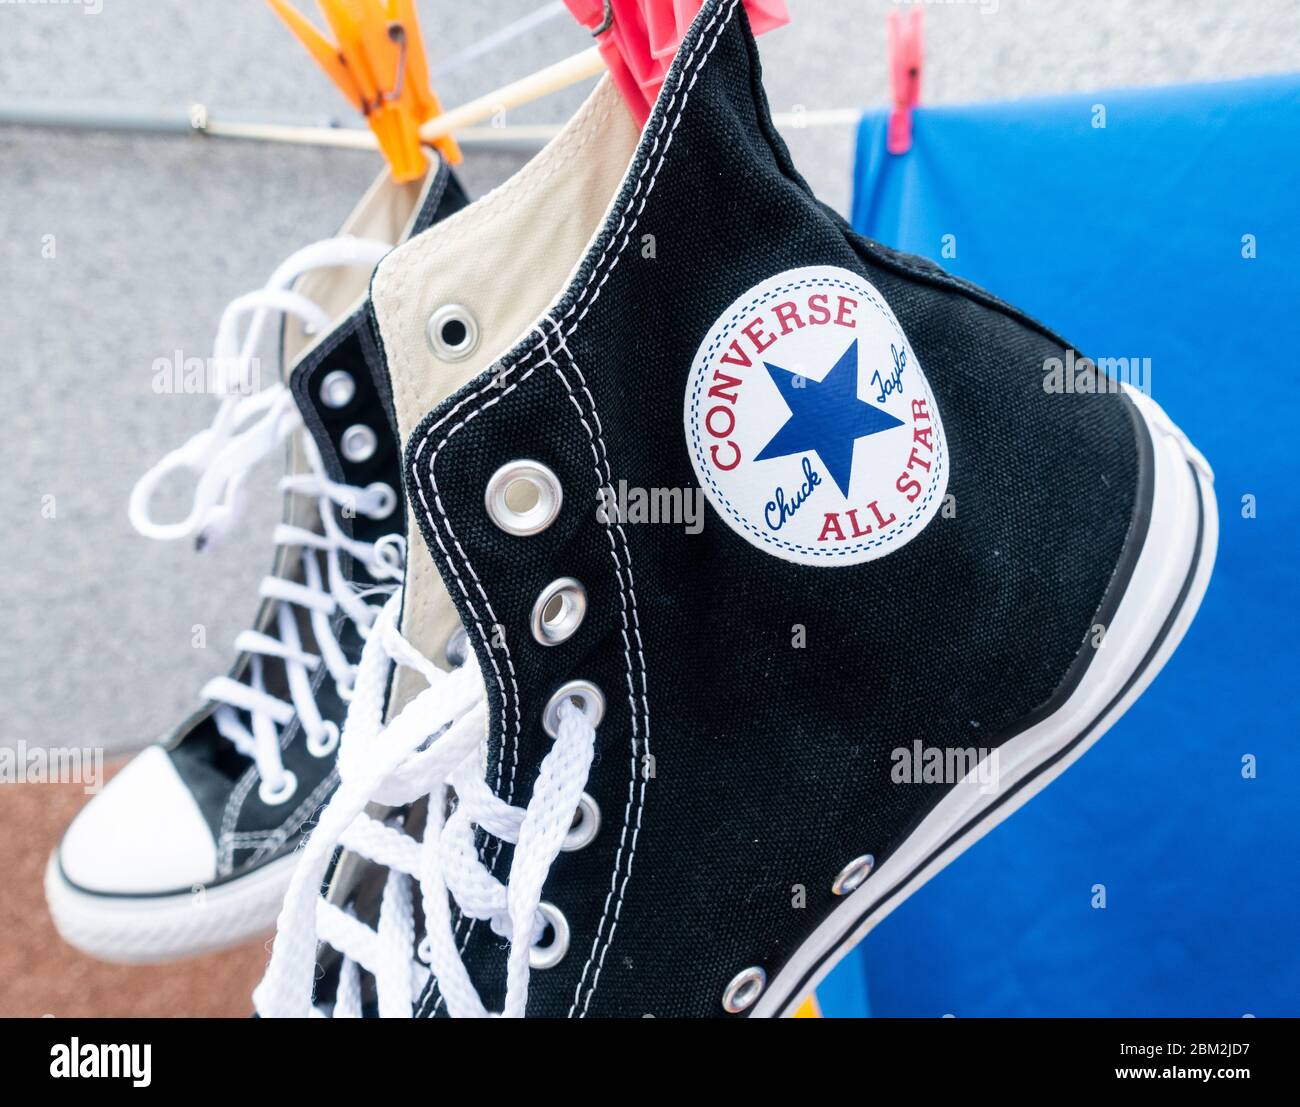 Chaussures de basket-ball Converse All Star sur la ligne de lavage Banque D'Images